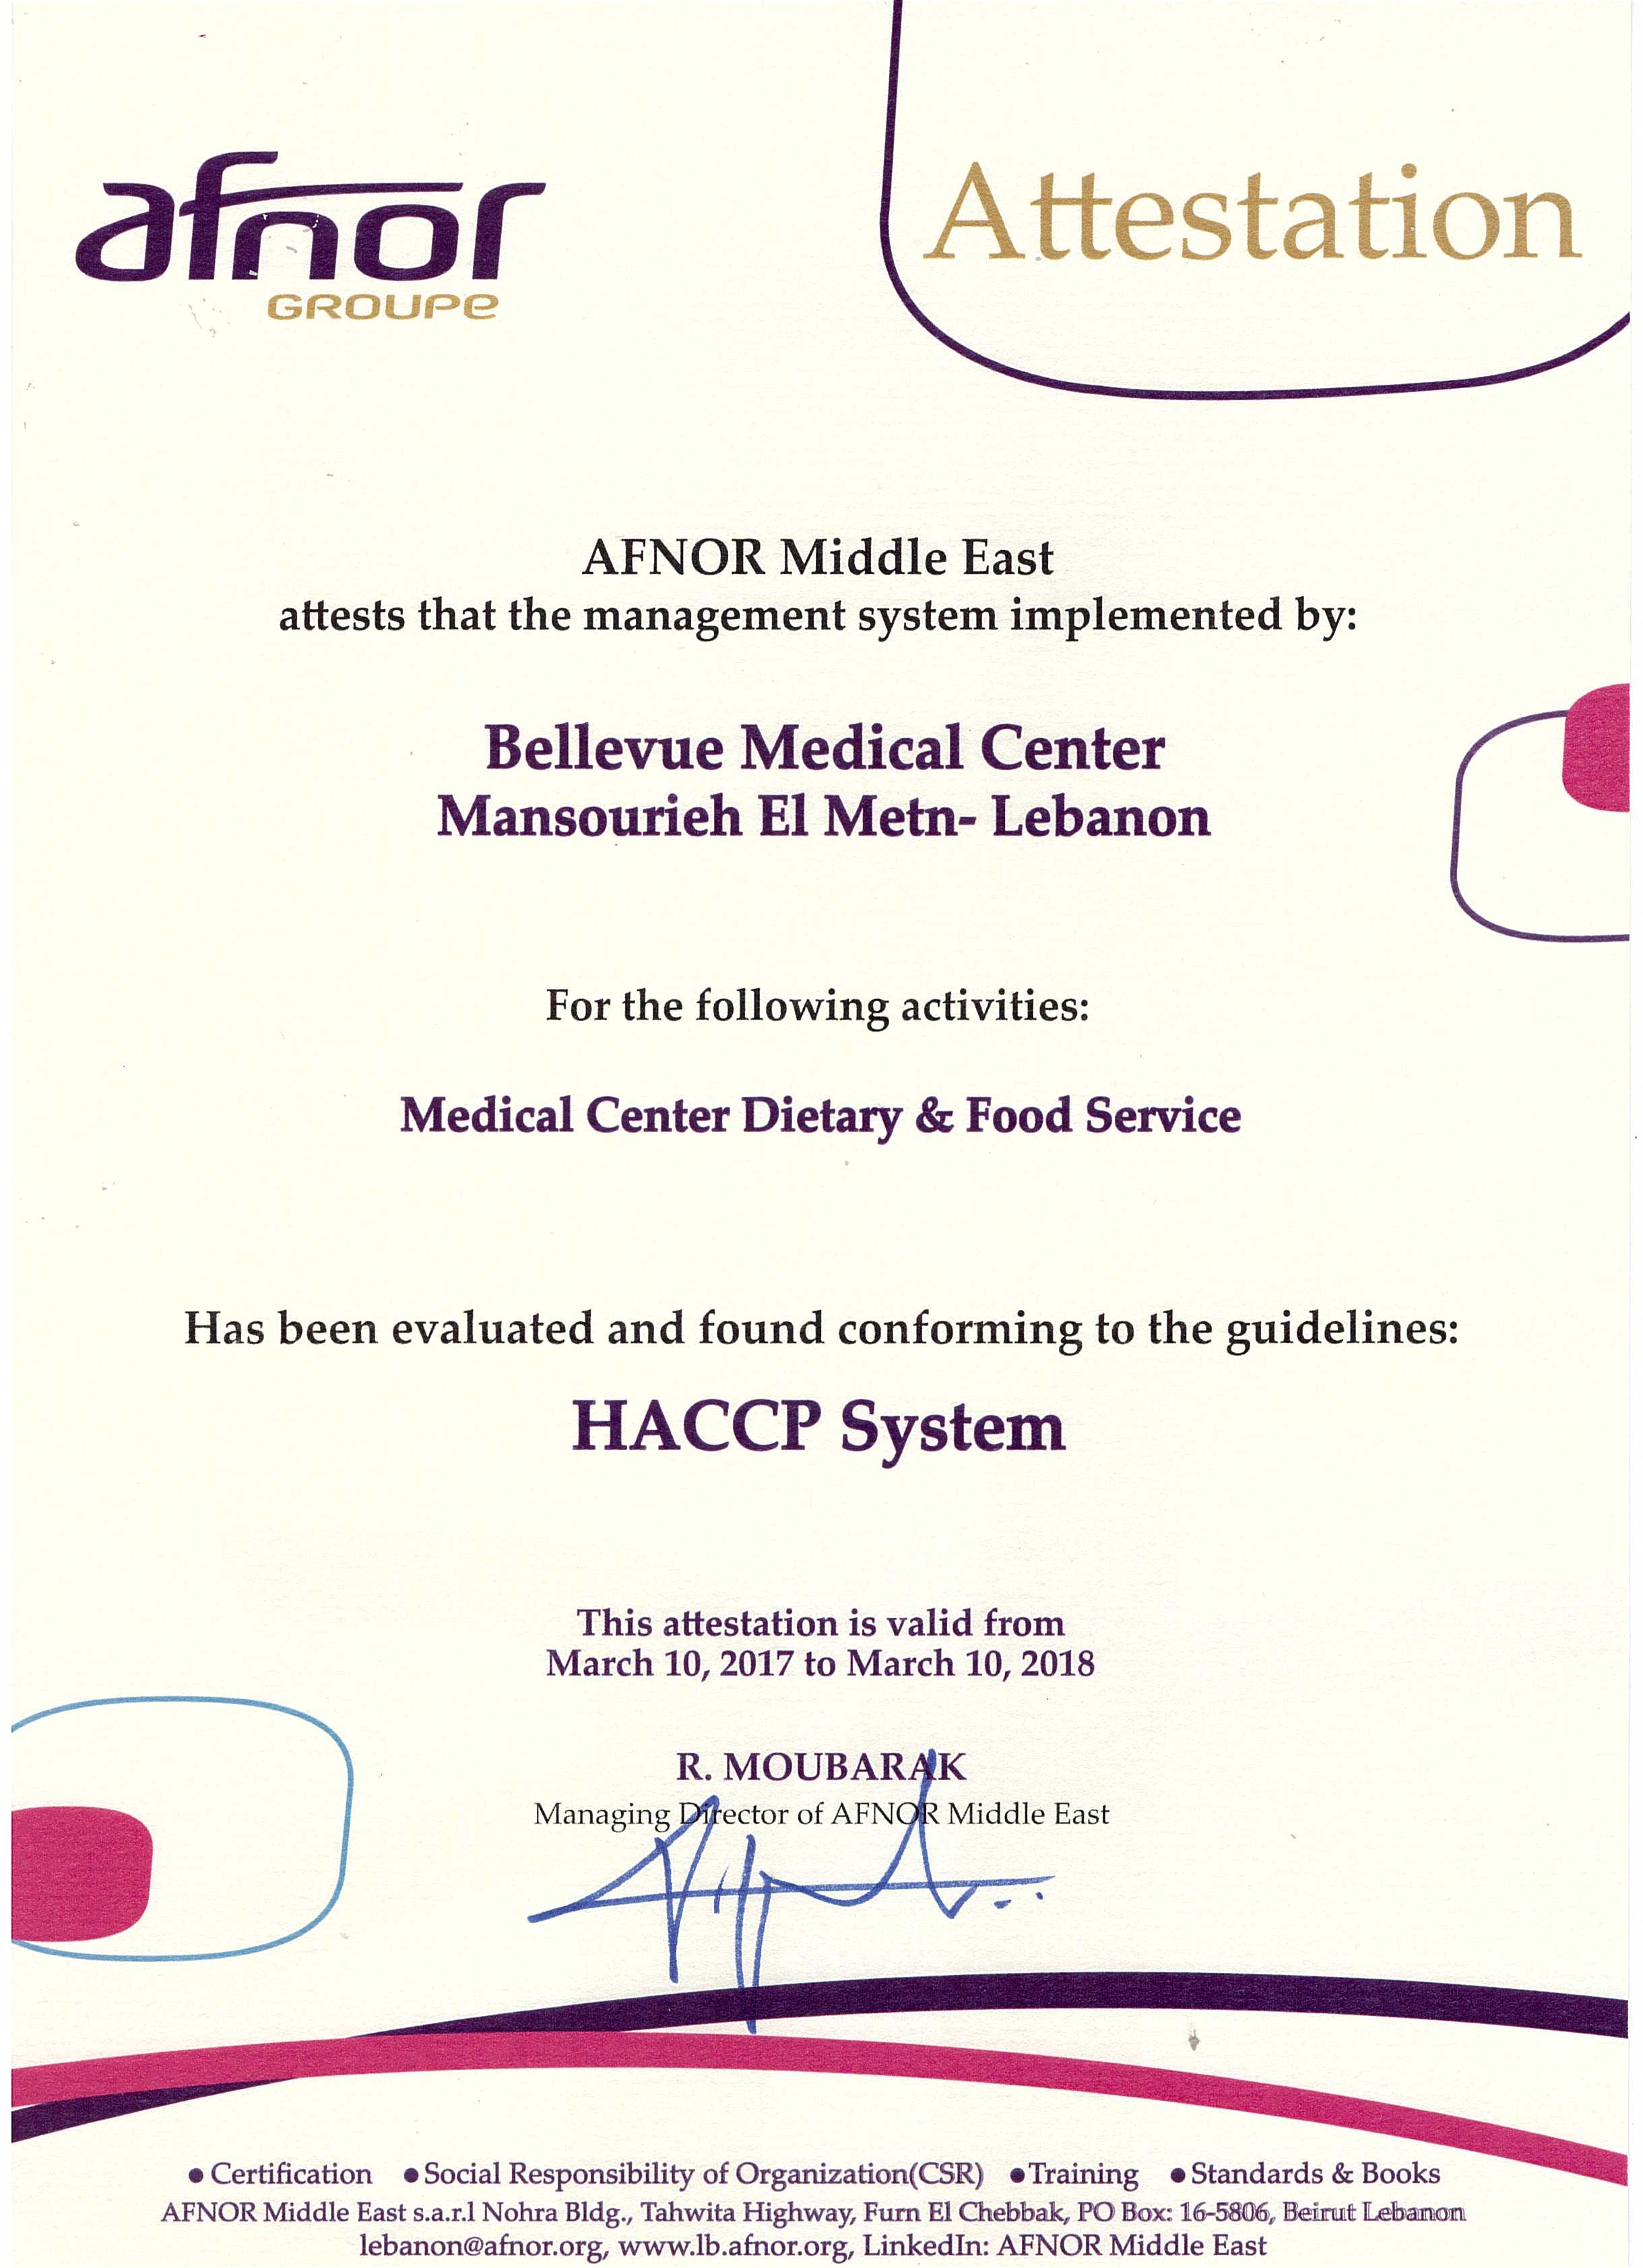 Introduzione alla Procedura HACCP: Garantire la Sicurezza Alimentare attraverso Passi Fondamentali